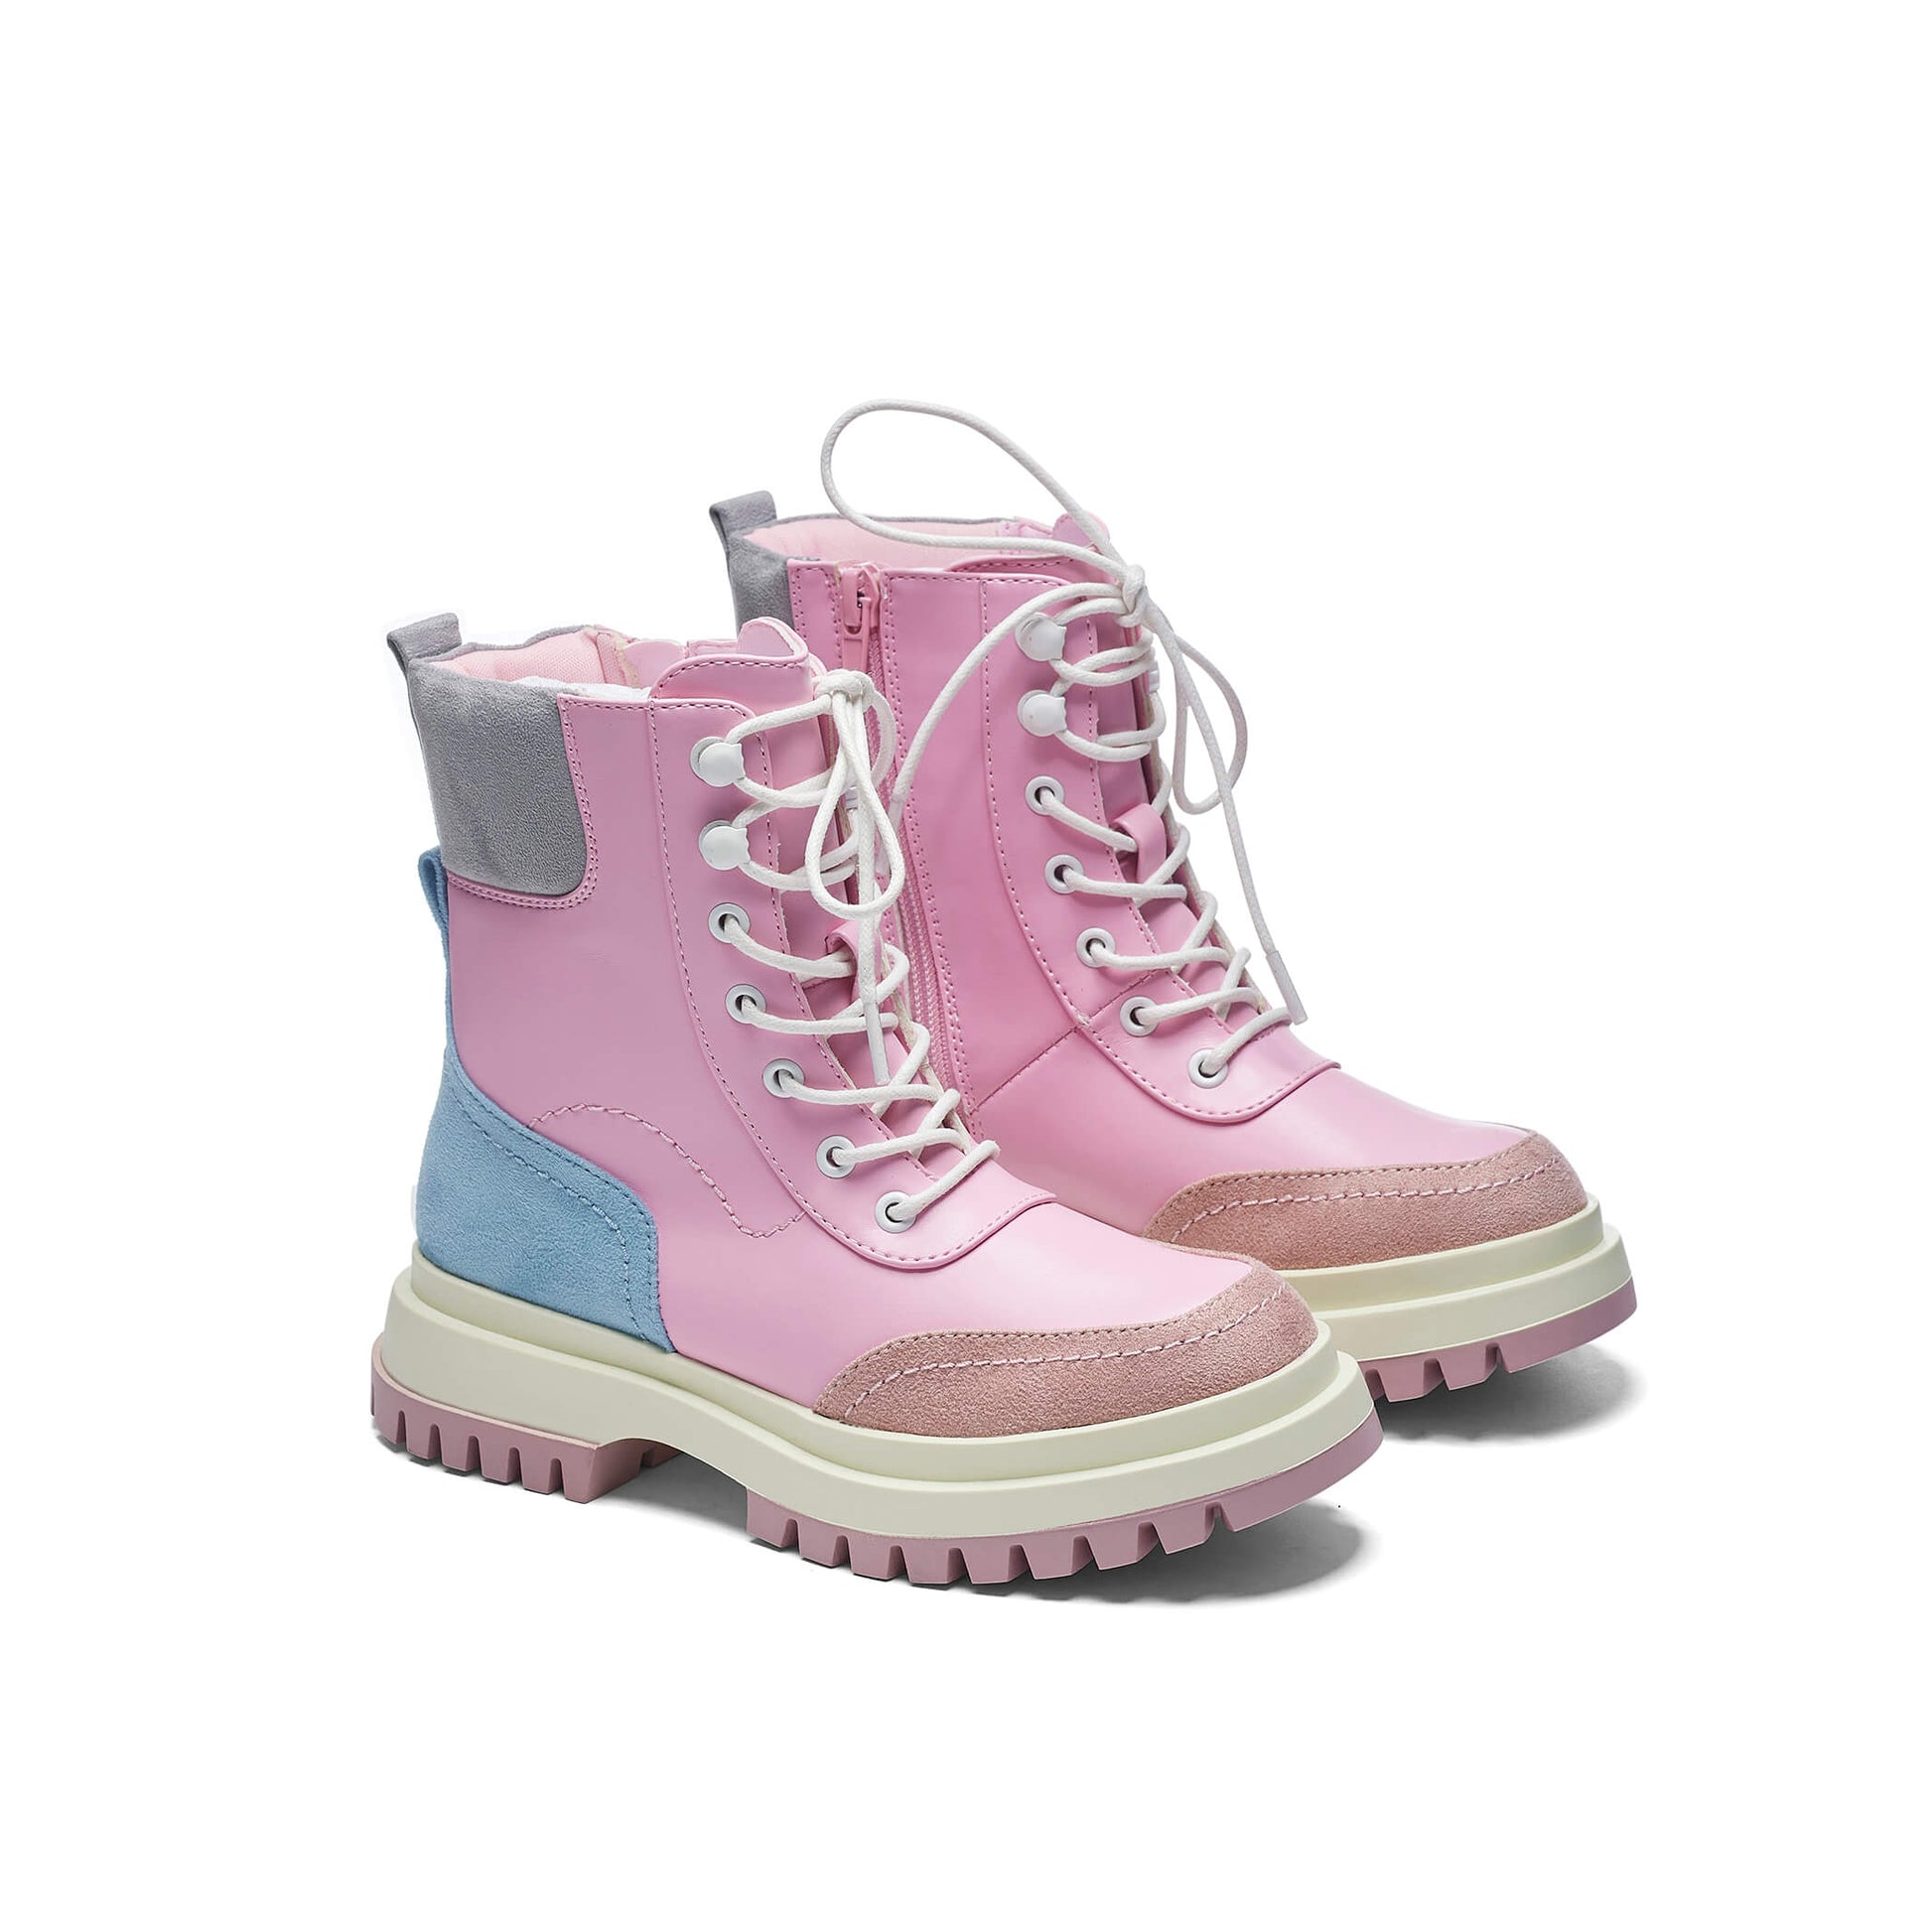 Lil’ Hydra Kawaii Boots - Ankle Boots - KOI Footwear - Pink - Three-Quarter View